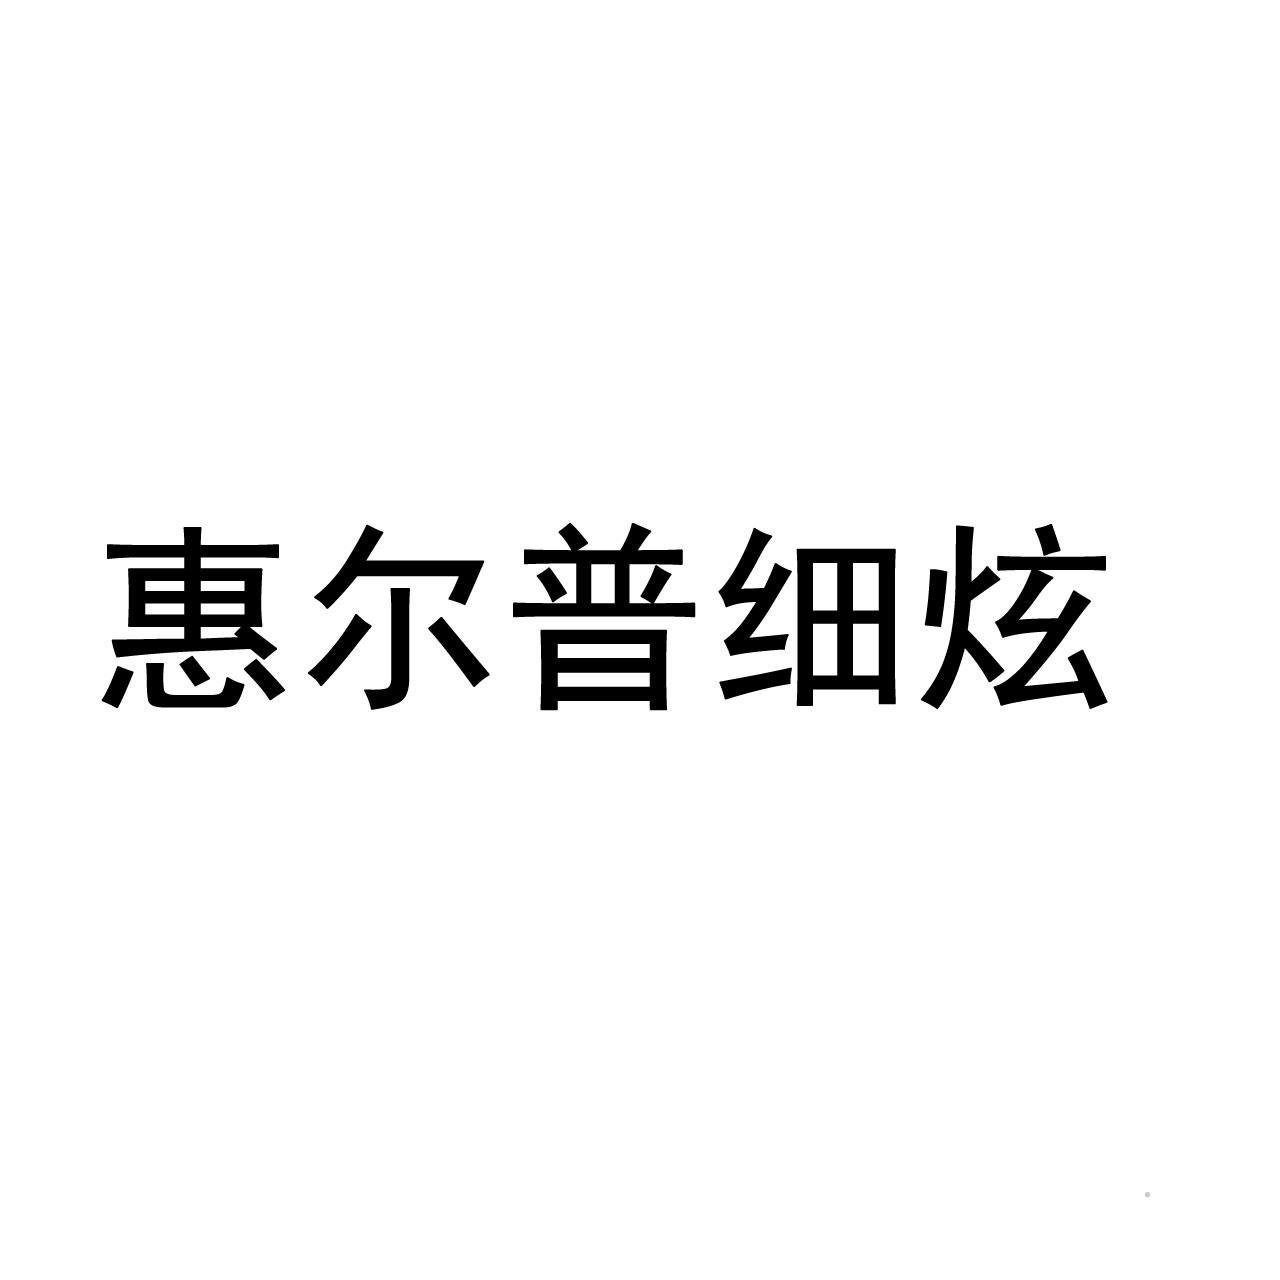 惠尔普细炫logo